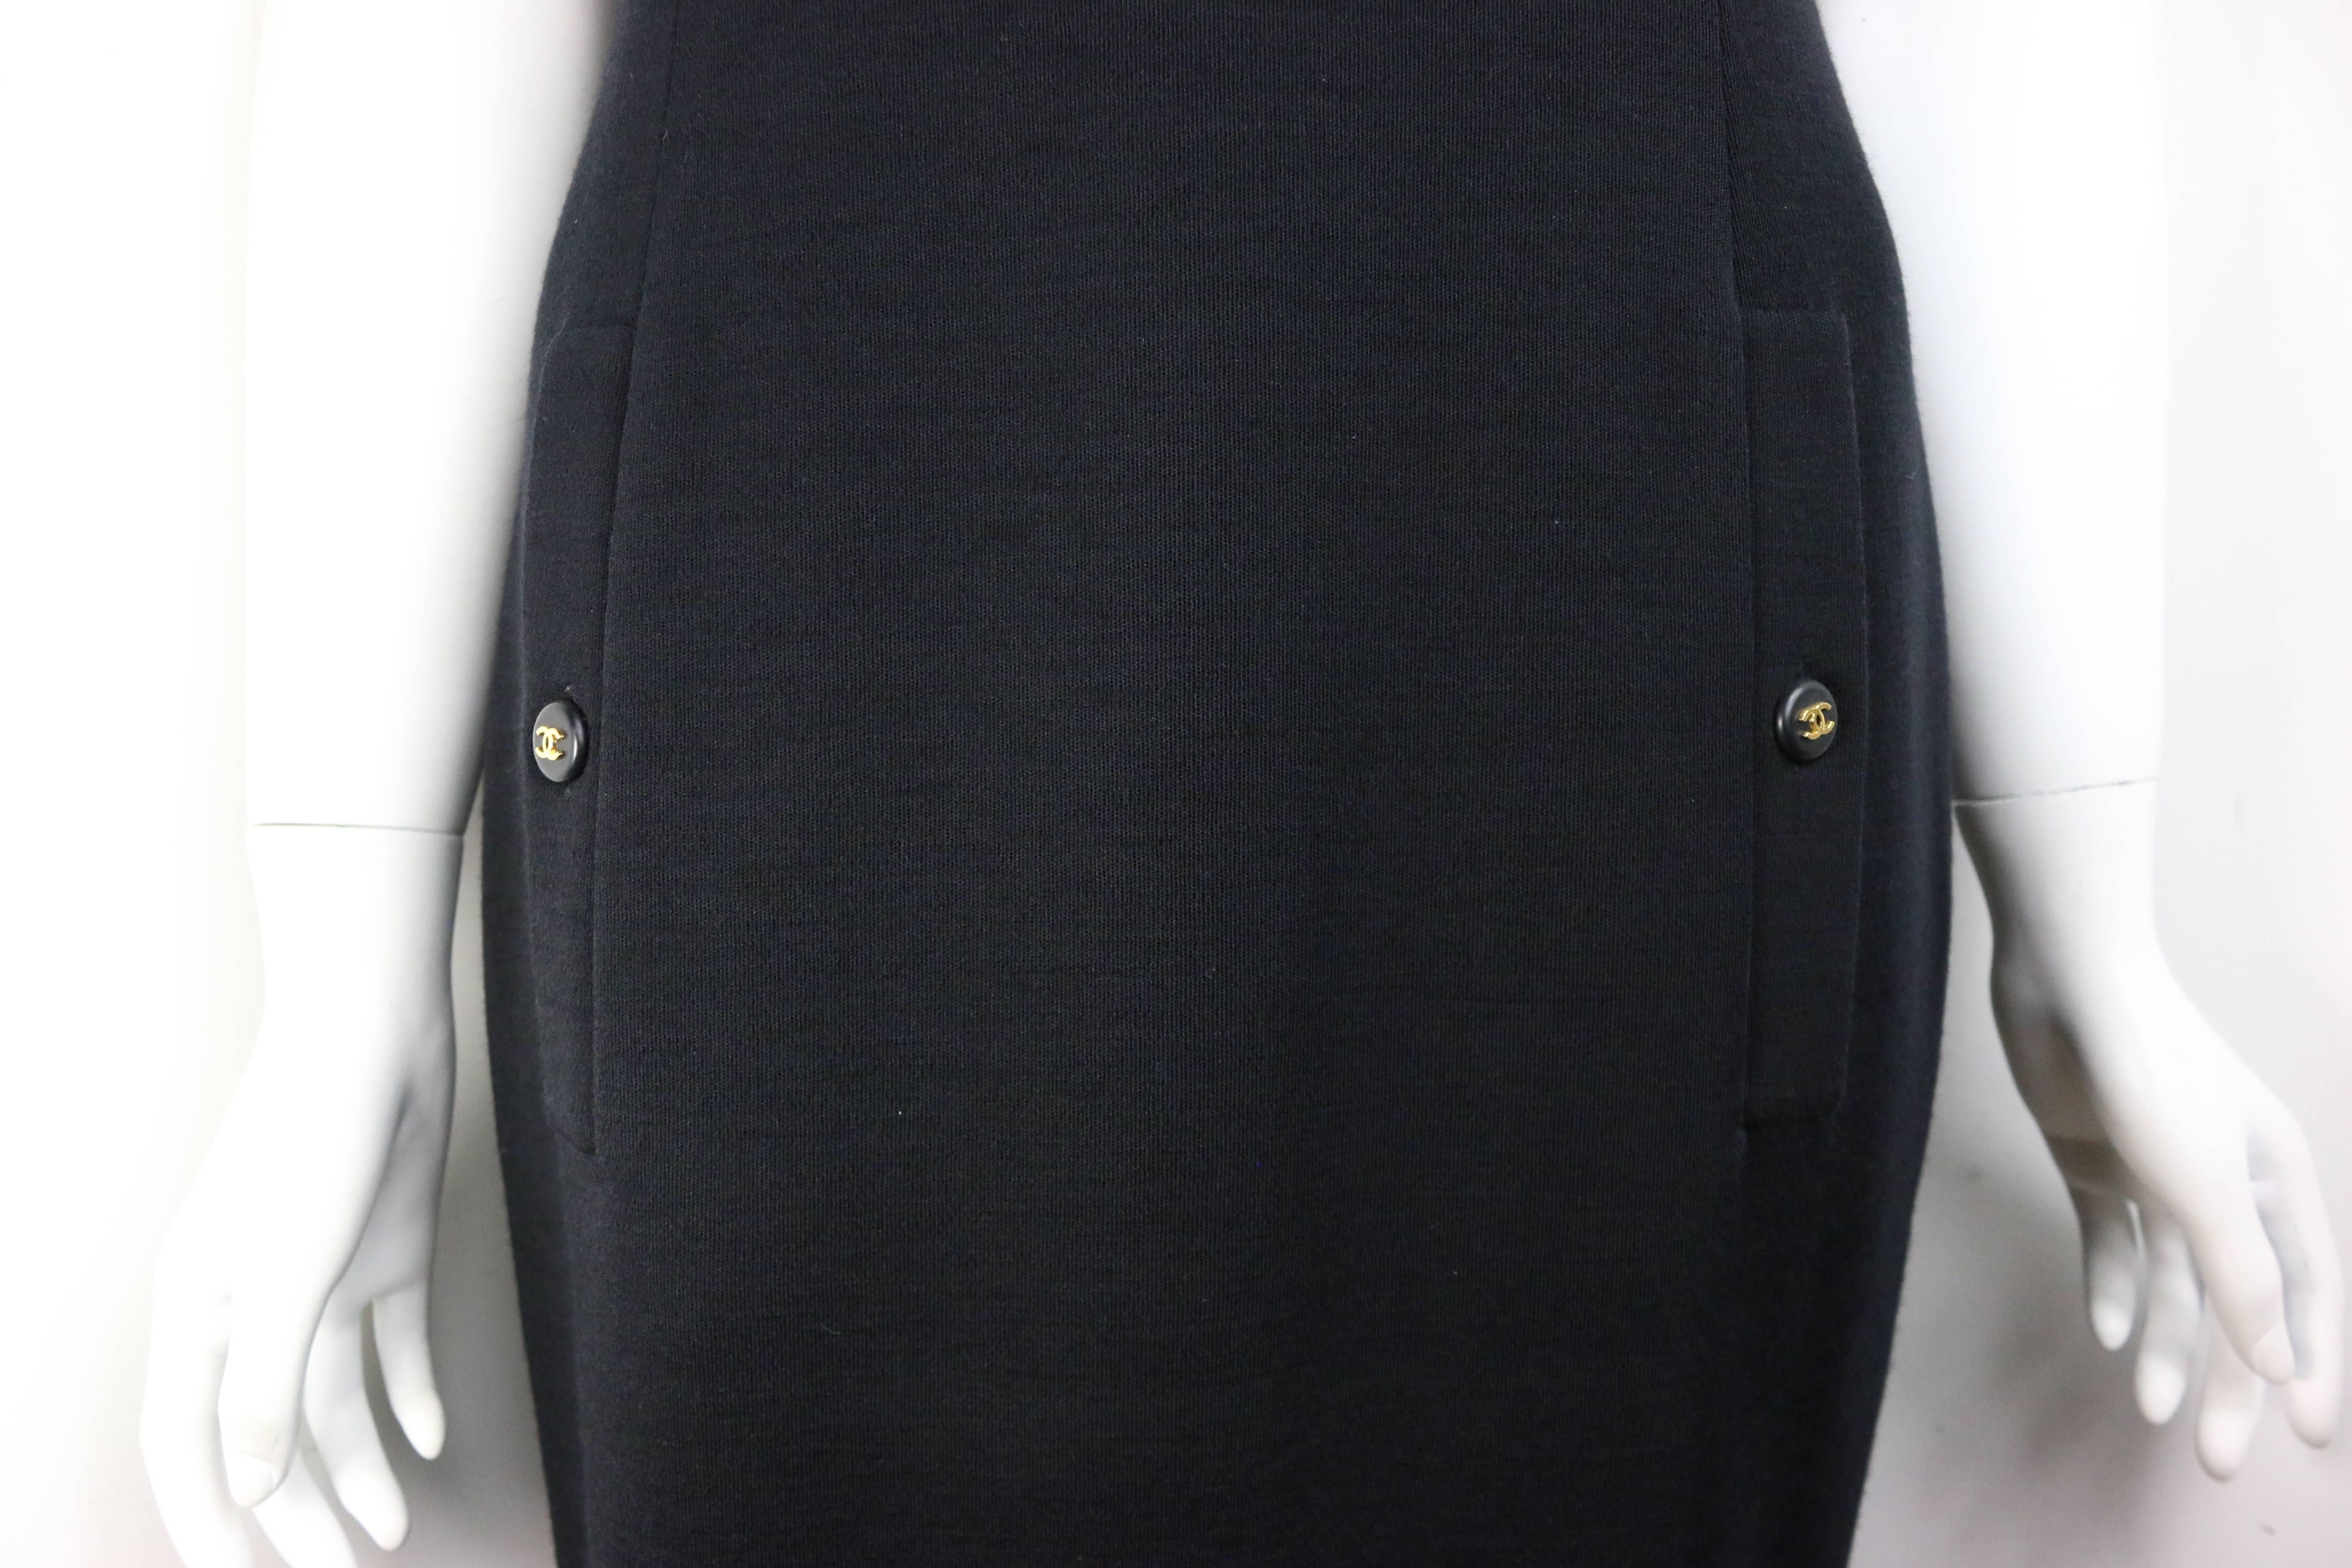 - Vintage Chanel kleines schwarzes Kleid aus Wolle aus der Herbstkollektion 1995. Das Kleid könnte schon einmal geändert worden sein und es passt wie eine 36 bis 38. 

- Mit zwei horizontalen Leistentaschen auf der Brust. Zwei vertikale